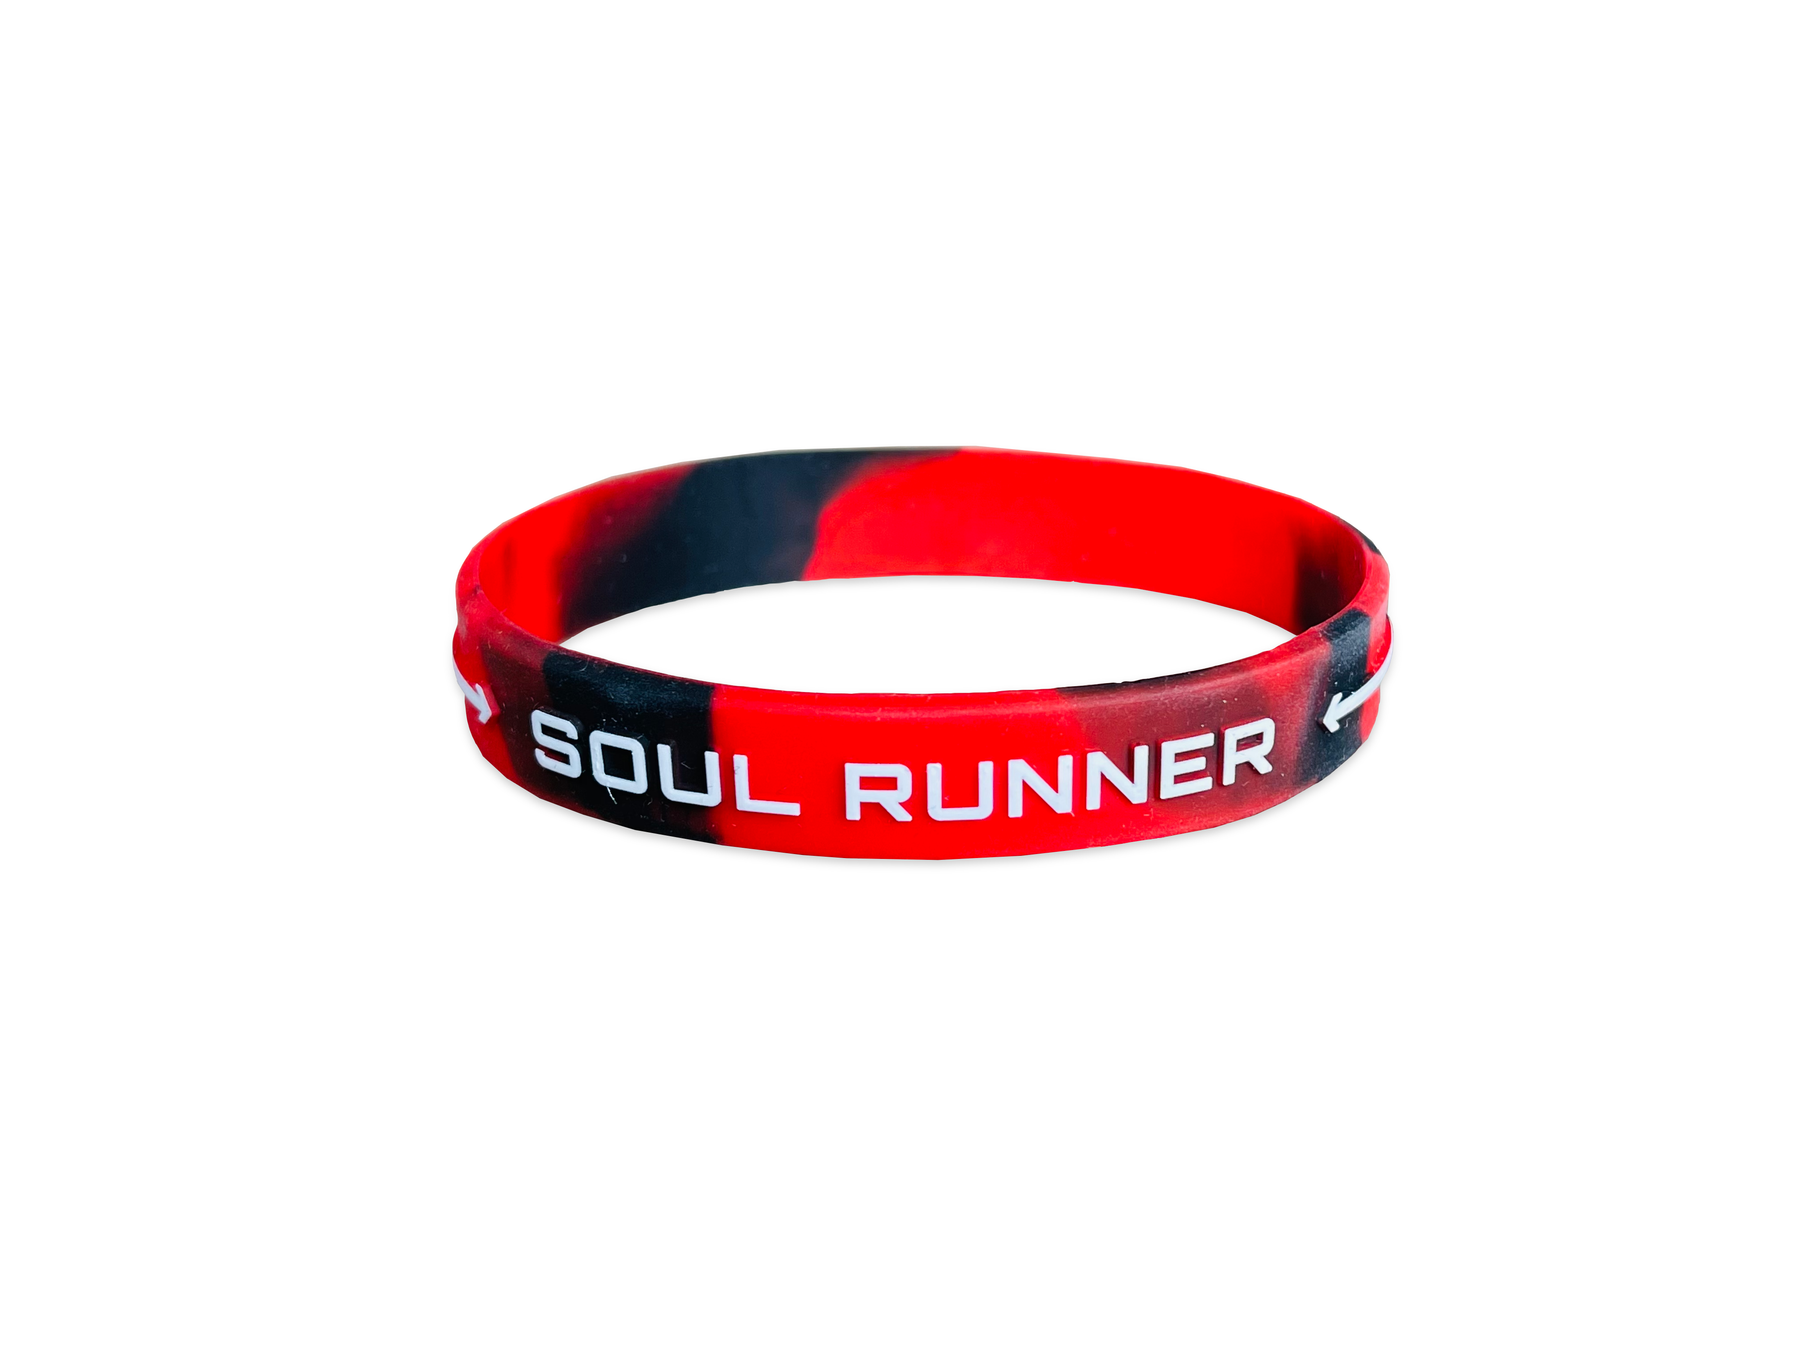 Soul Runner by Tyreek Hill Merch Bracelet